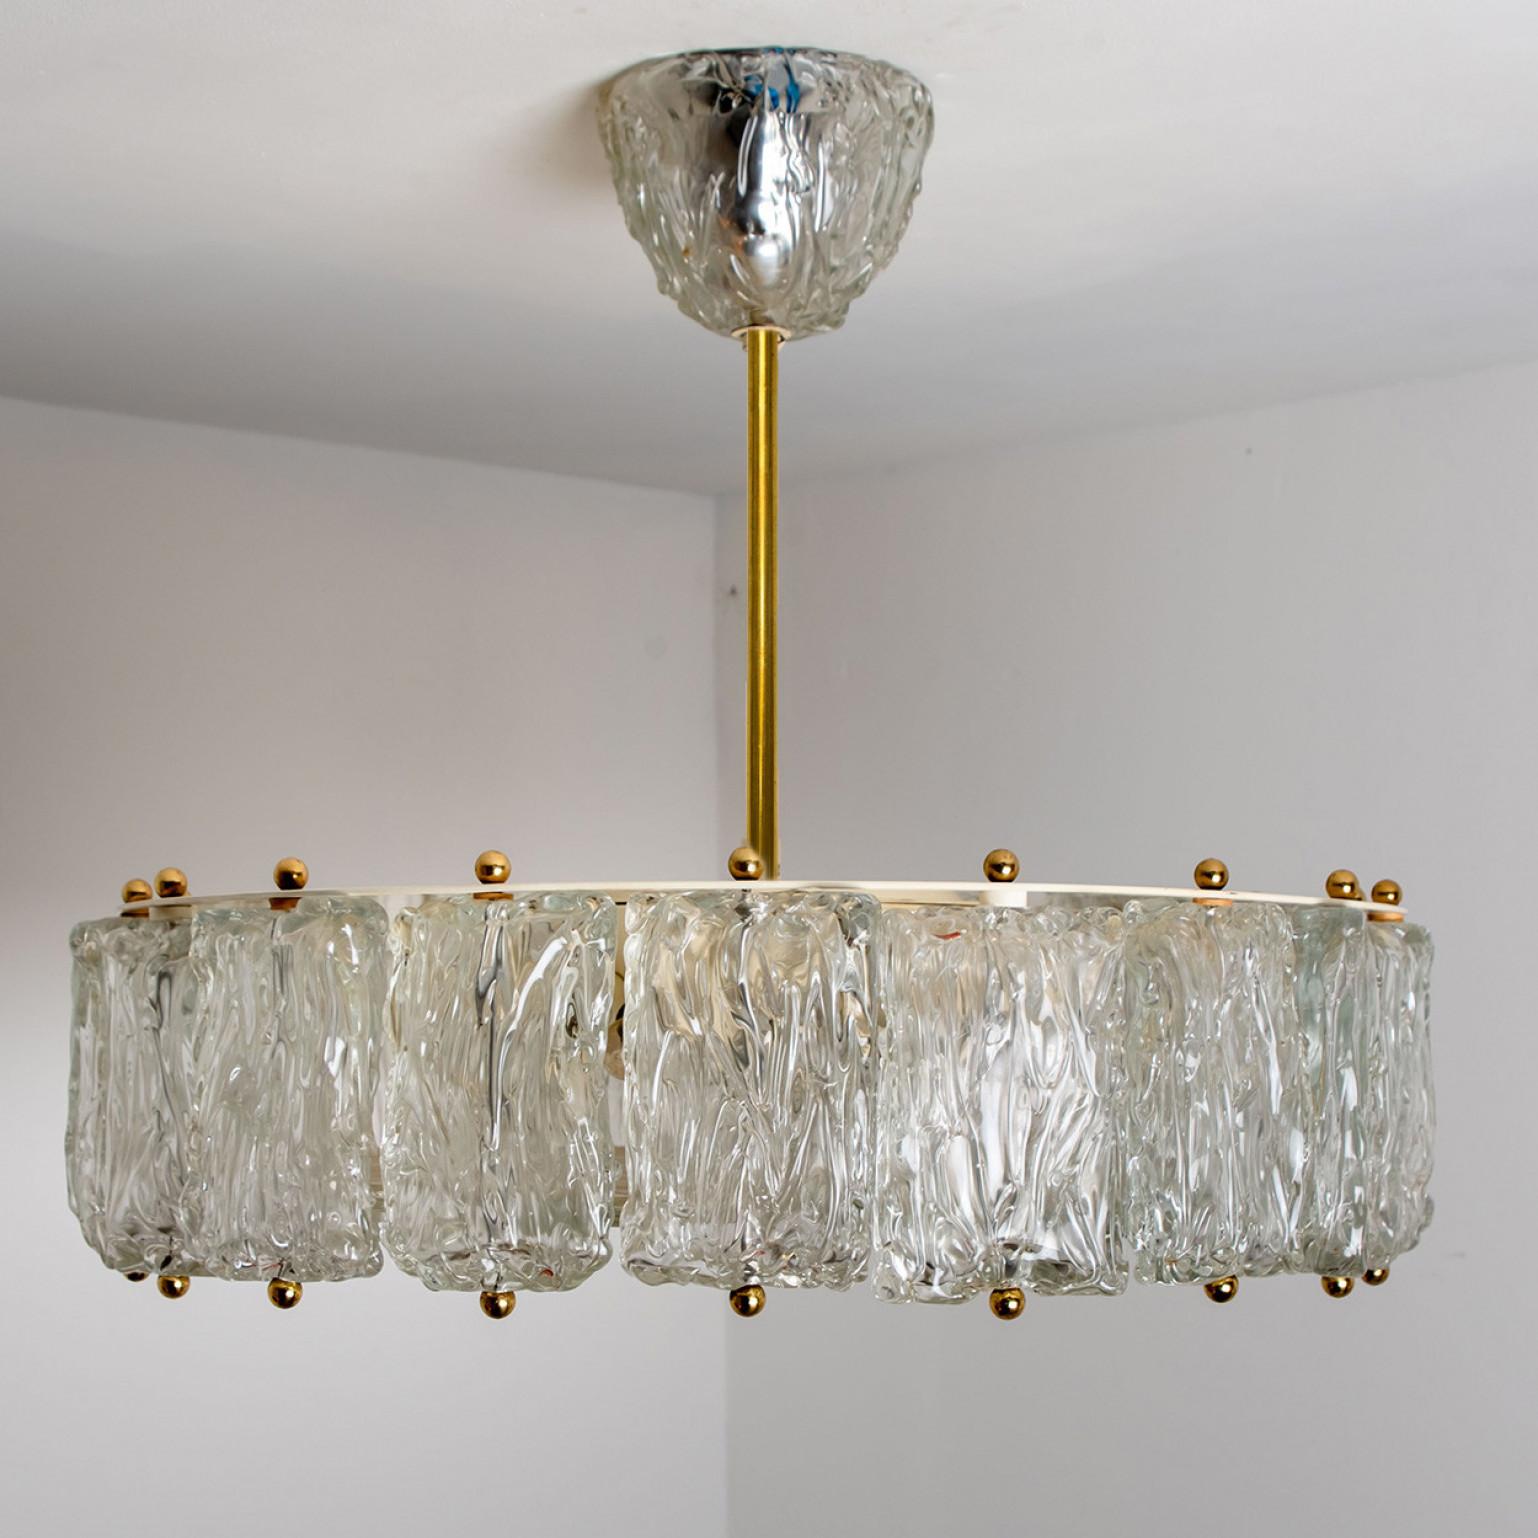 Une grande et élégante suspension en verre de Murano soufflé à la main par Barovier&Toso, Italie en 1960. Verre glacé épais et transparent avec détails en laiton. Le verre texturé réfracte magnifiquement la lumière. La suspension remplit la pièce